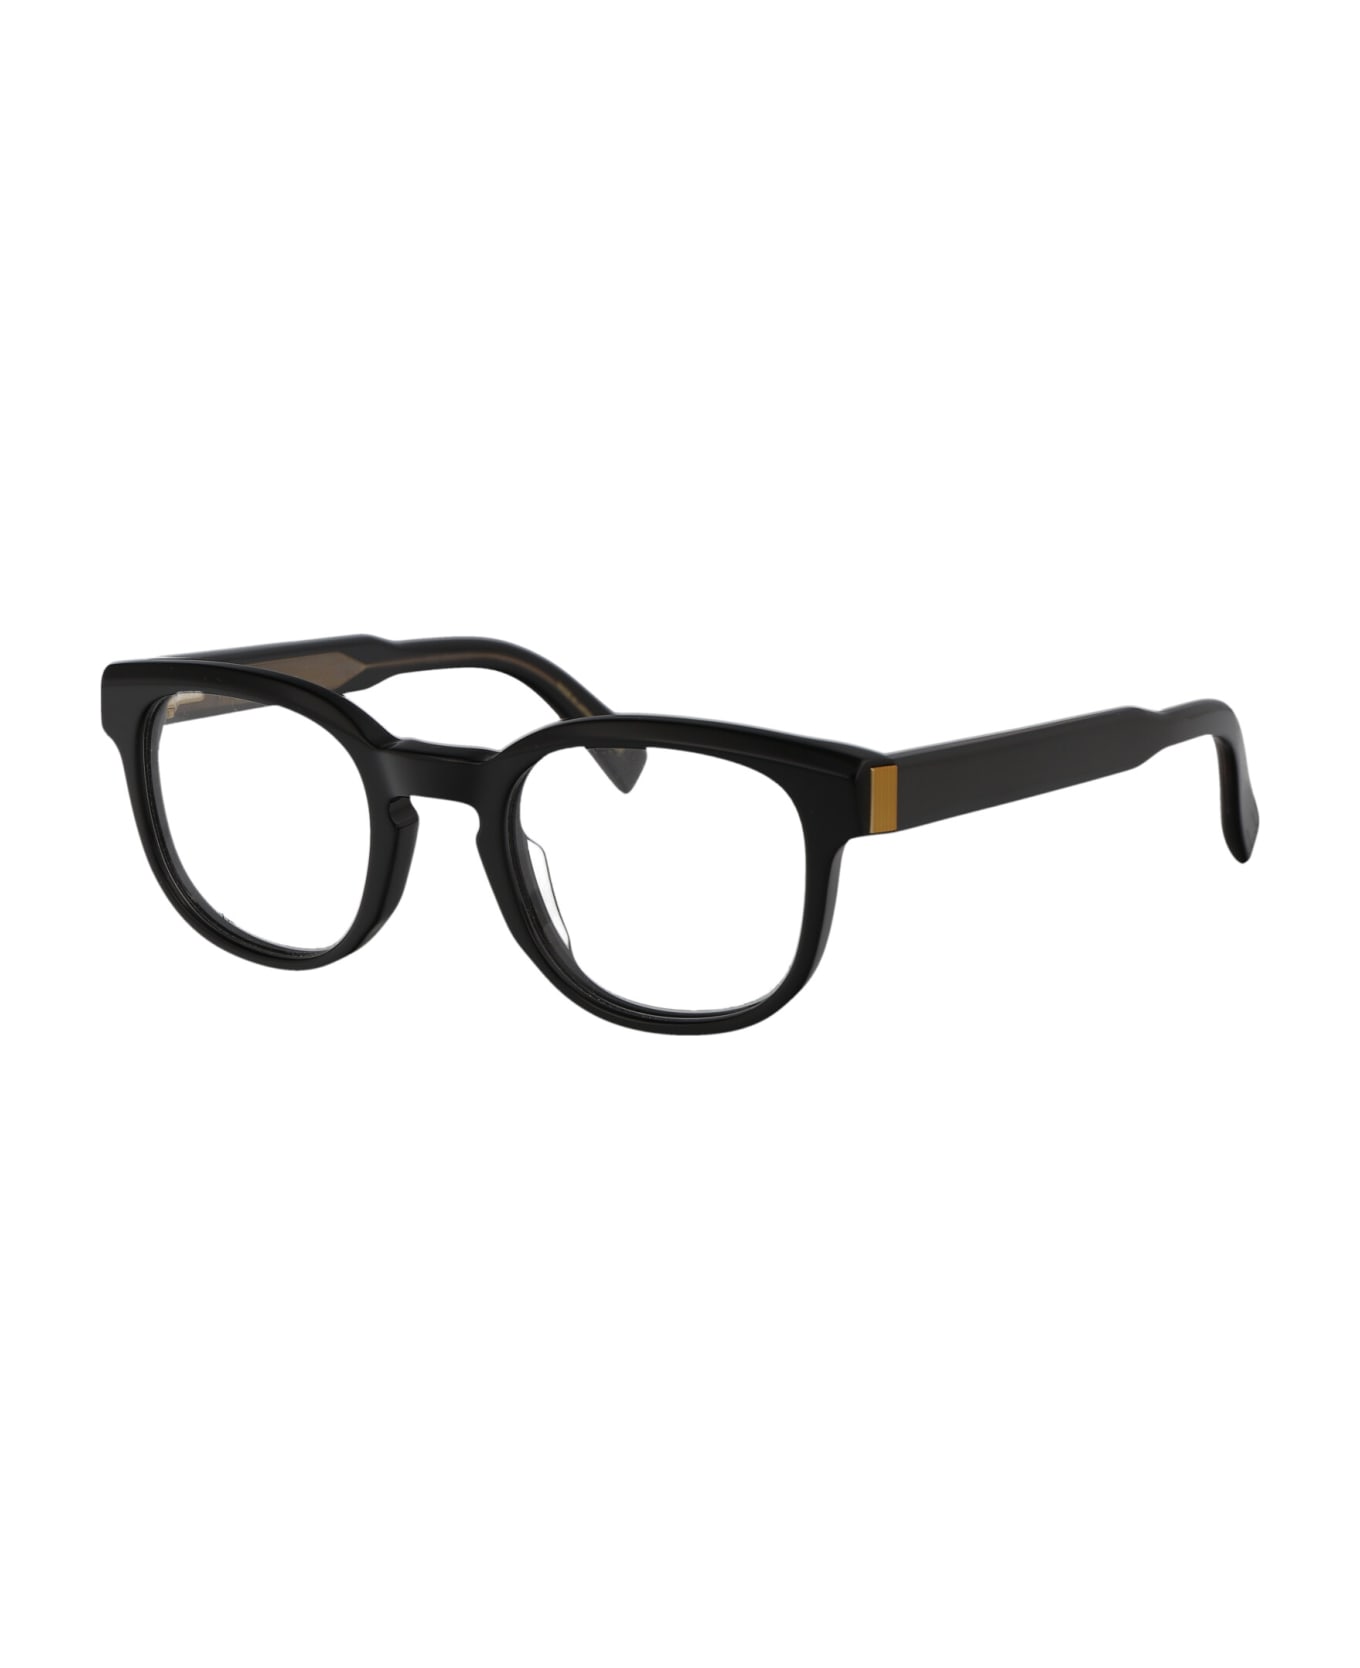 Dunhill Du0003o Glasses - 001 BLACK BLACK TRANSPARENT